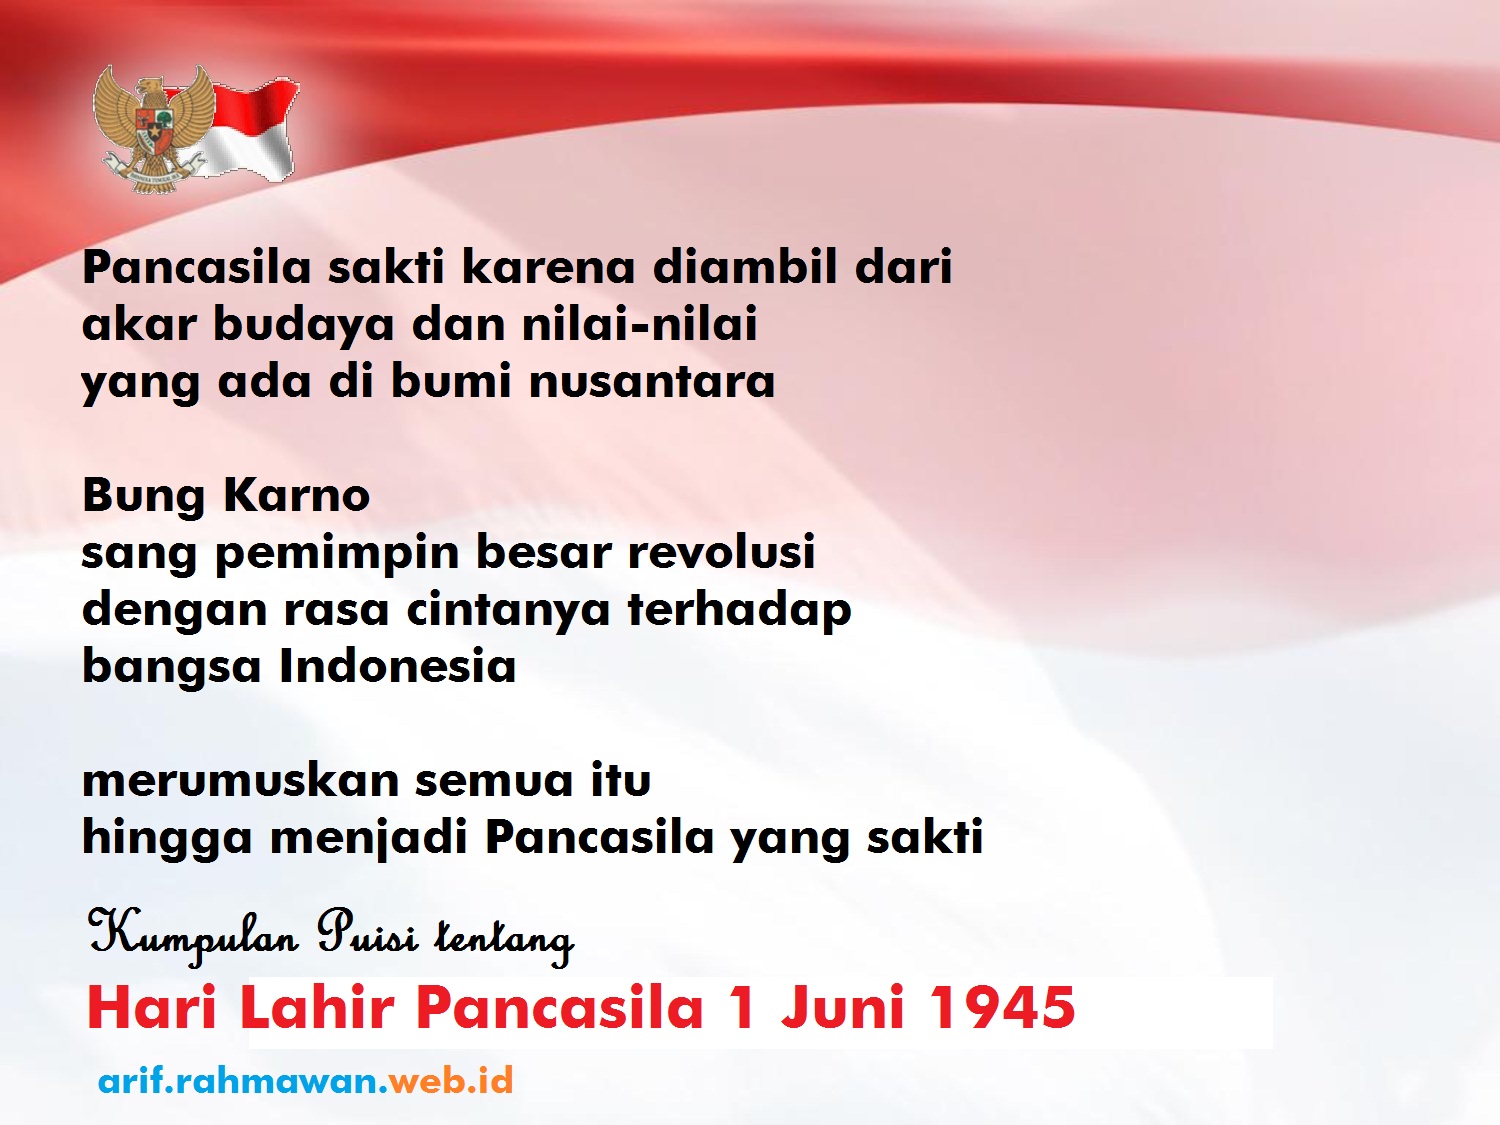 Kumpulan Puisi Hari Lahir Pancasila 1 Juni 1945 - 2017 